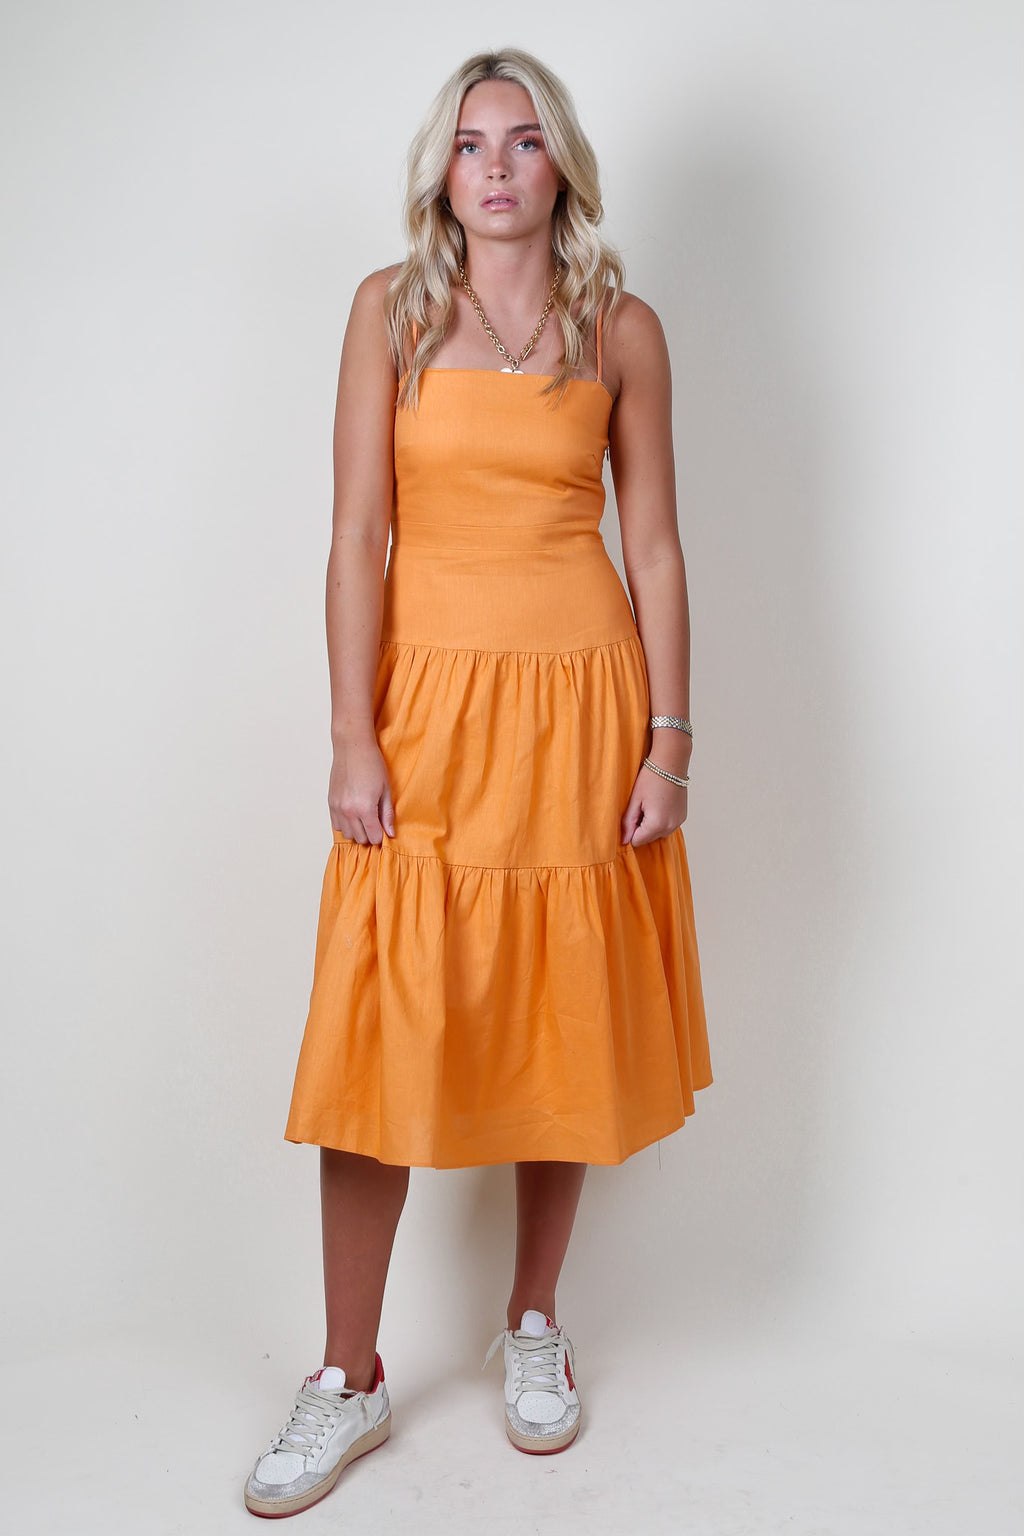 LUCY PARIS | Jill Drop Waist Dress - Orange